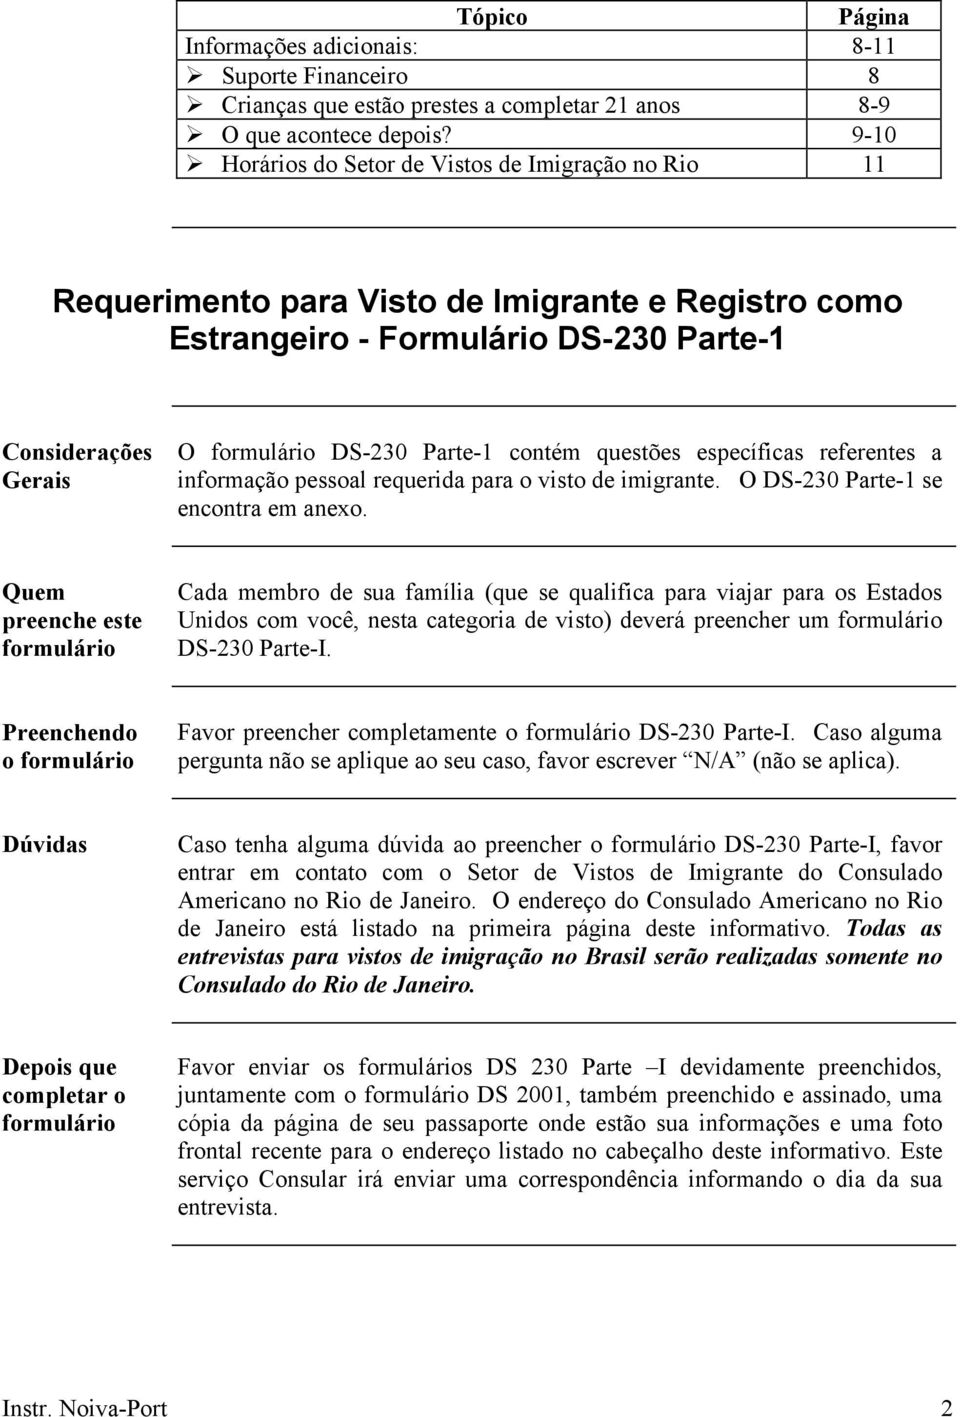 contém questões específicas referentes a informação pessoal requerida para o visto de imigrante. O DS-230 Parte-1 se encontra em anexo.